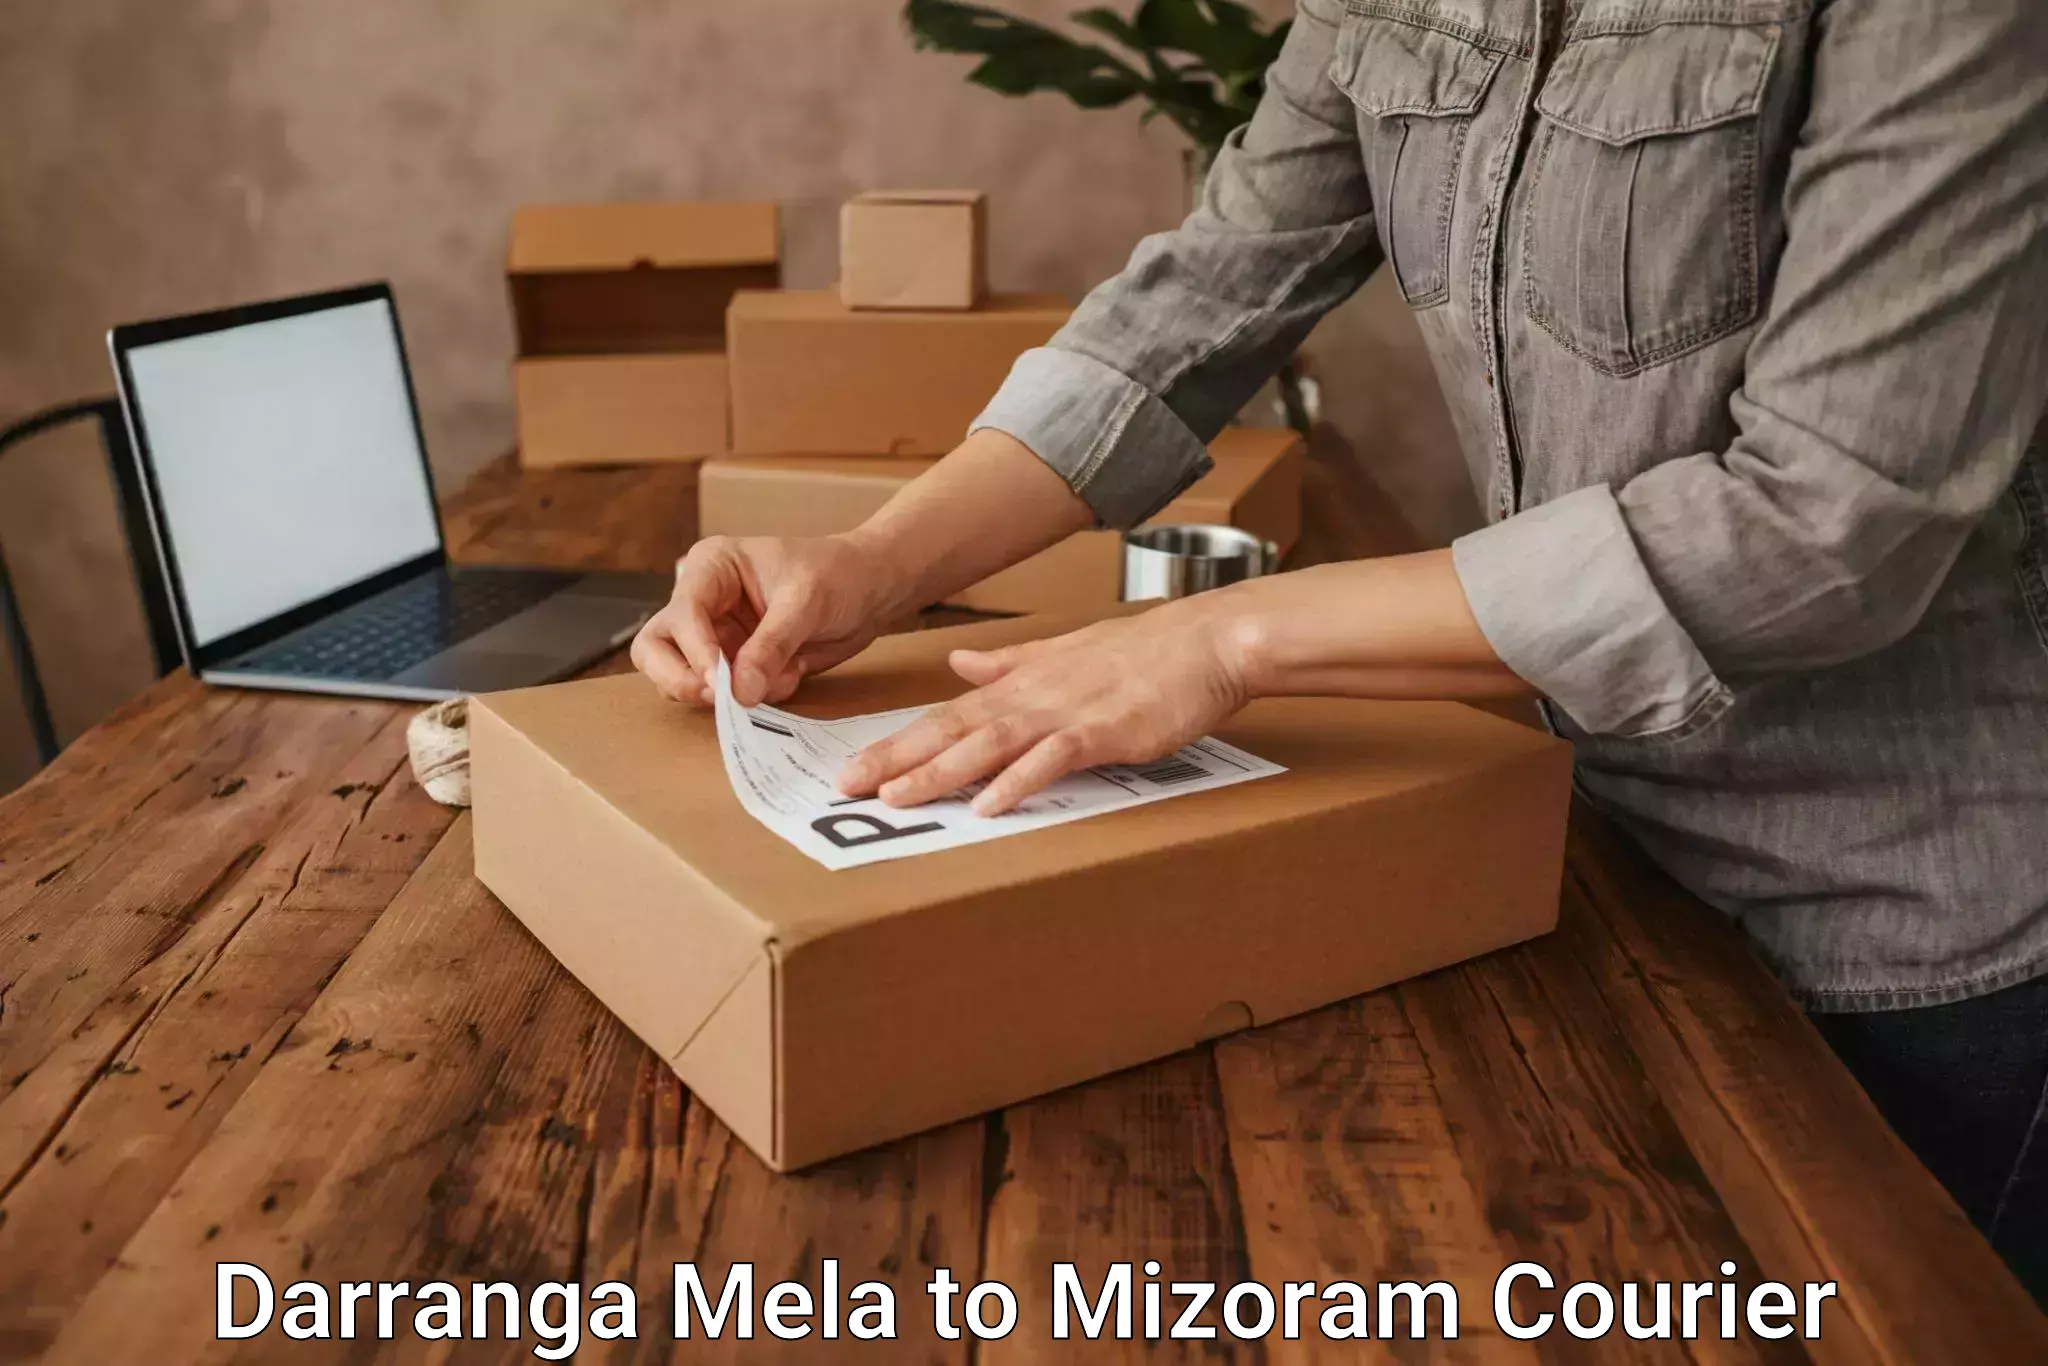 Door-to-door freight service Darranga Mela to Mizoram